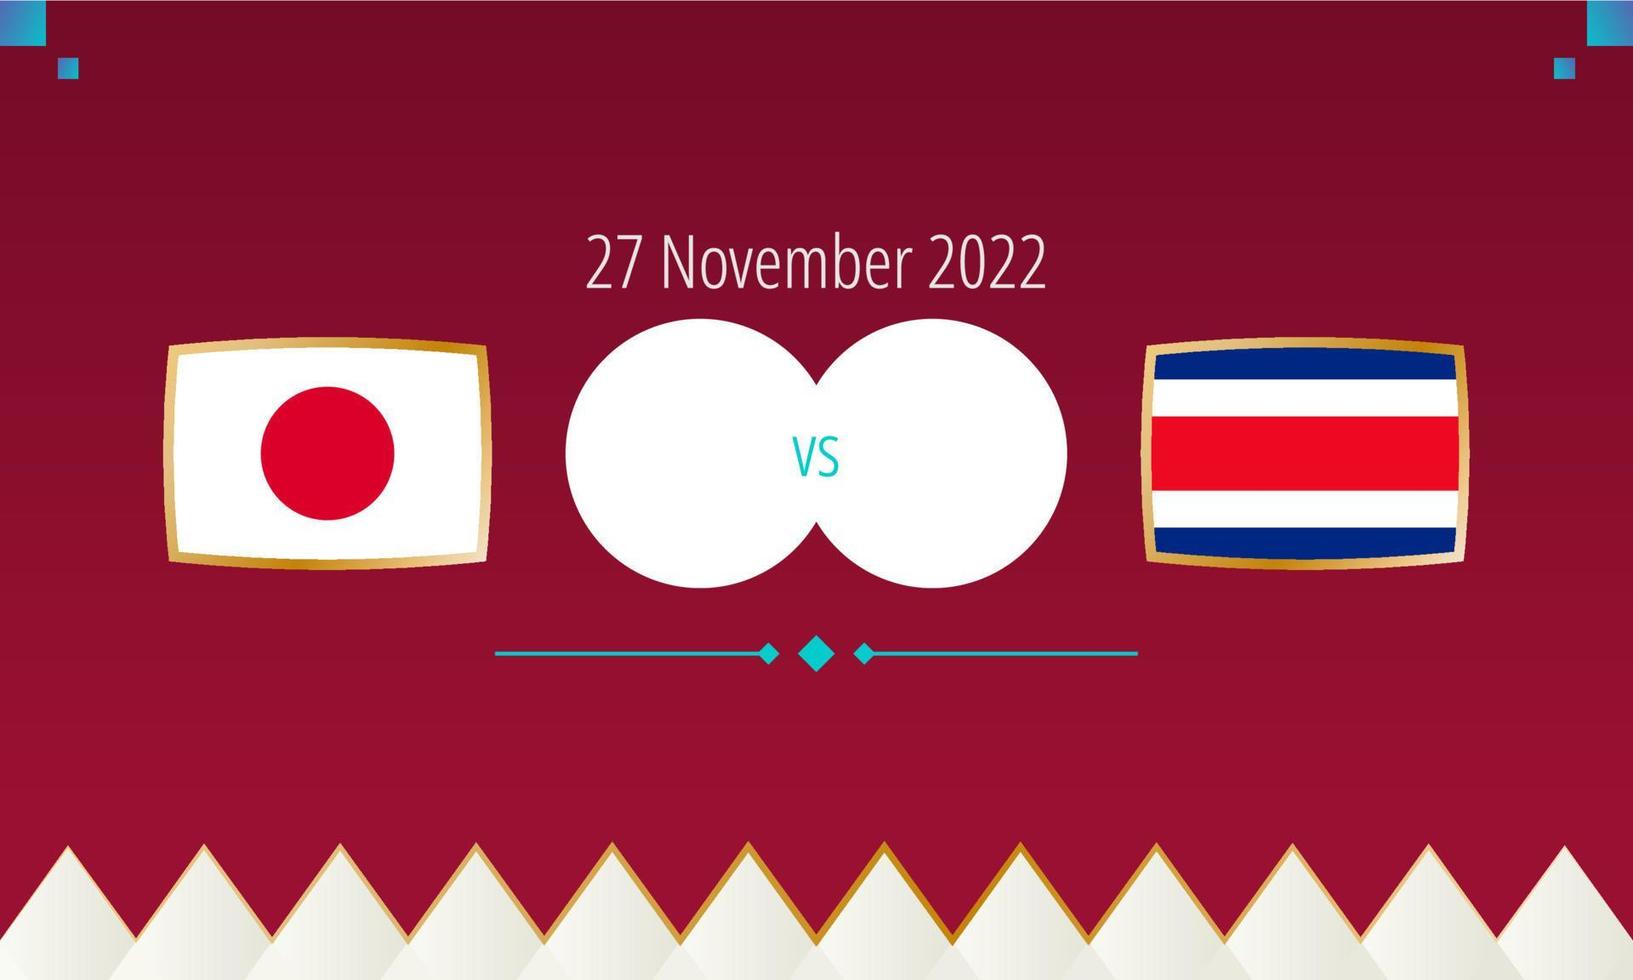 partido de fútbol japón vs costa rica, competencia internacional de fútbol 2022. vector